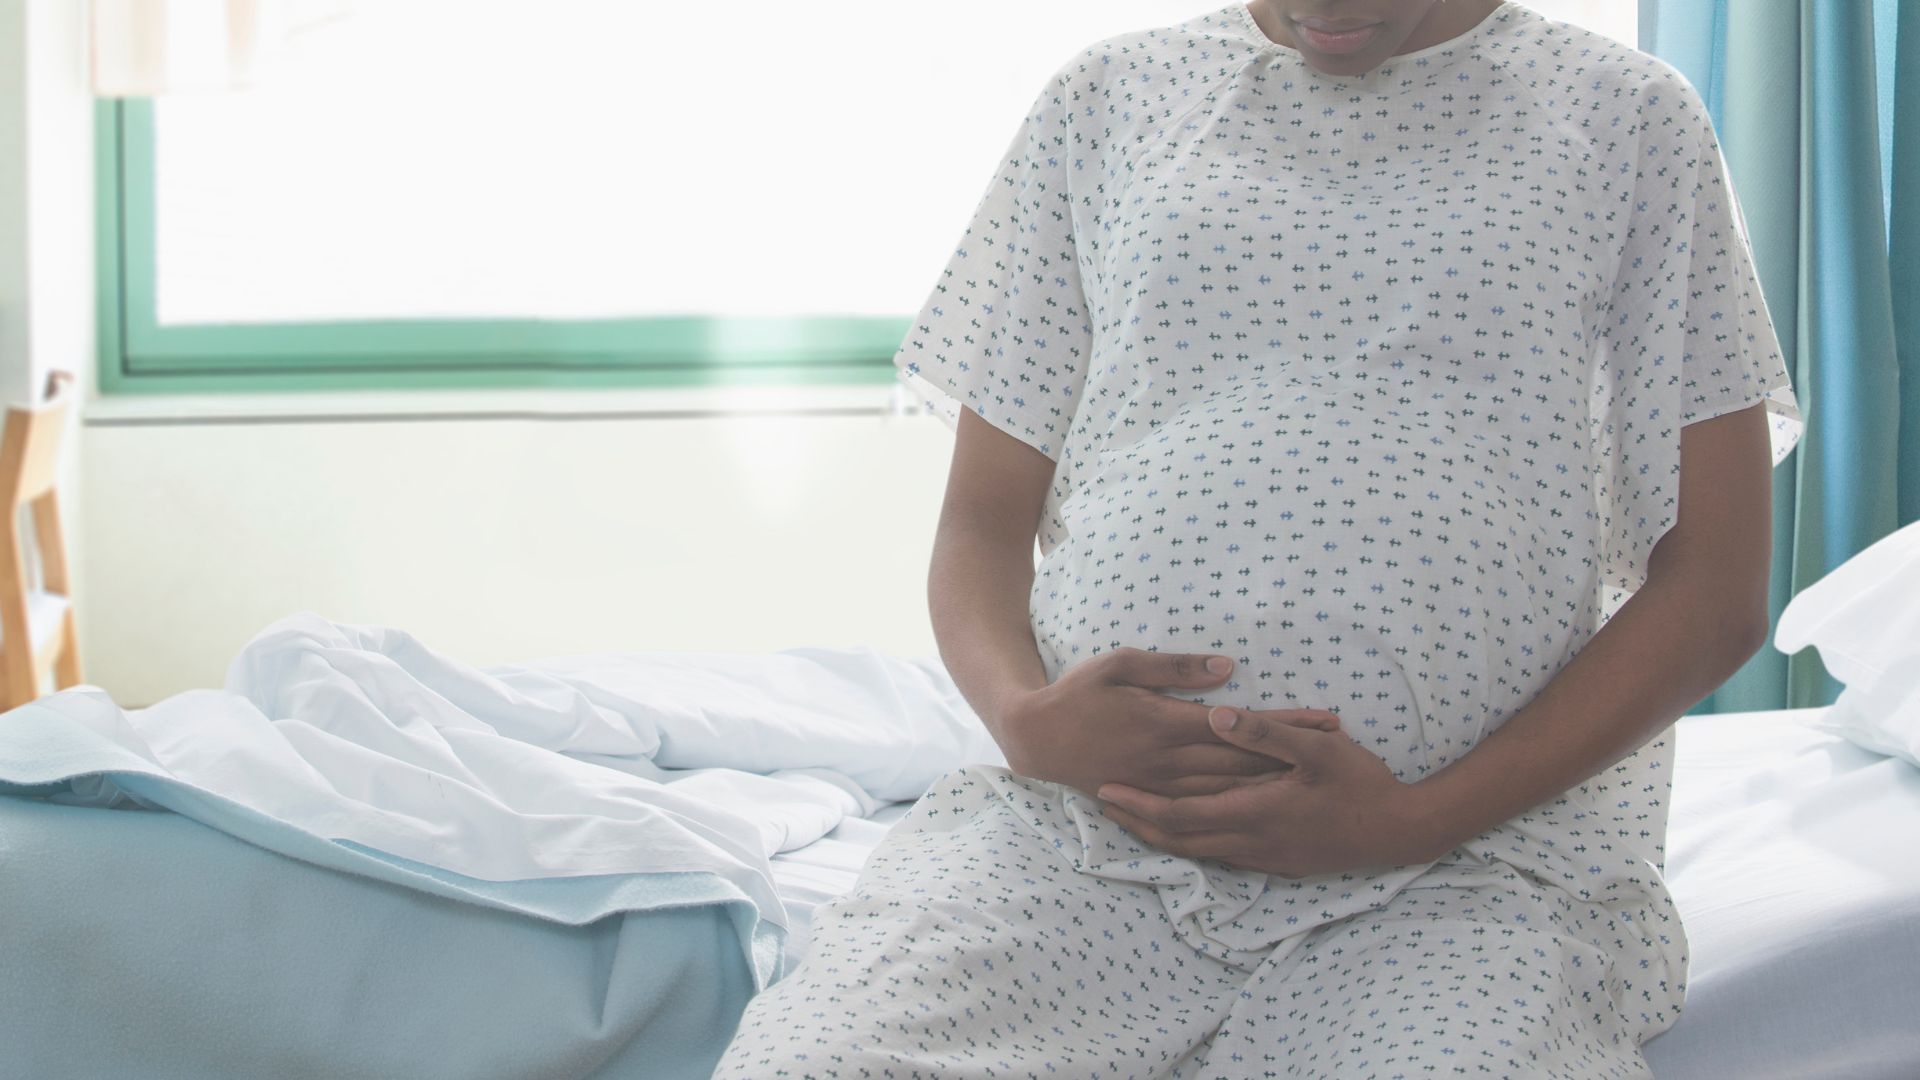 la photo montre une femme enceinte vêtue d'une robe en papier assise sur un lit d'hôpital, les mains sur le ventre